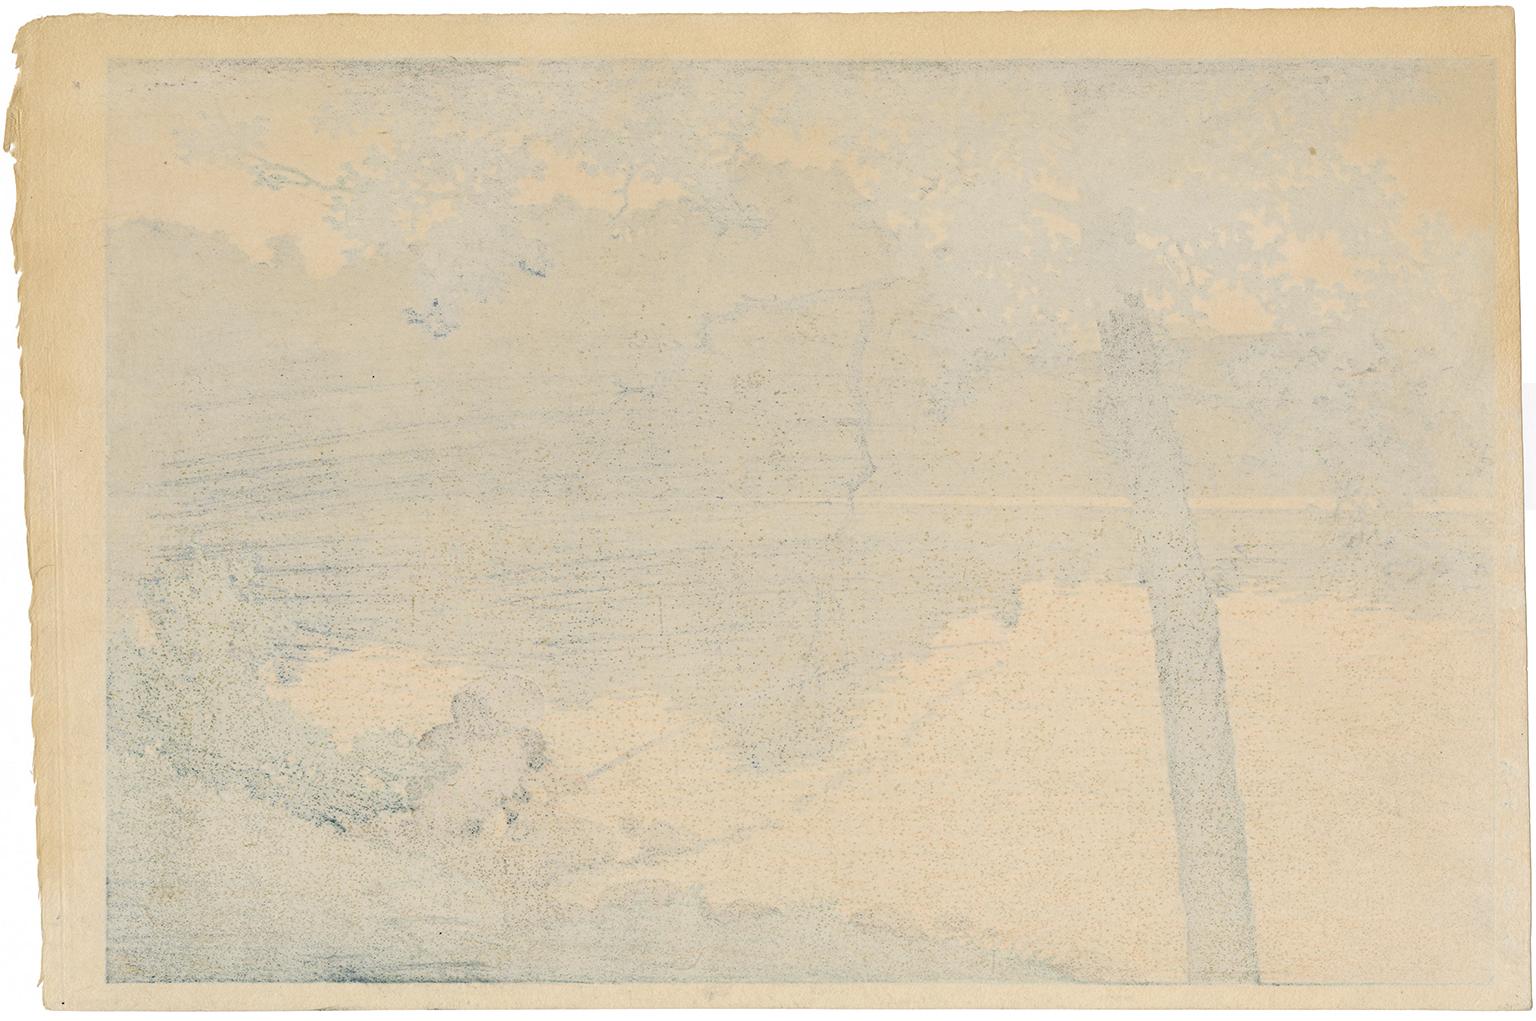 Shinshu Matsubarako (Lake Matsubara, Shinshu) - Print by Kawase Hasui